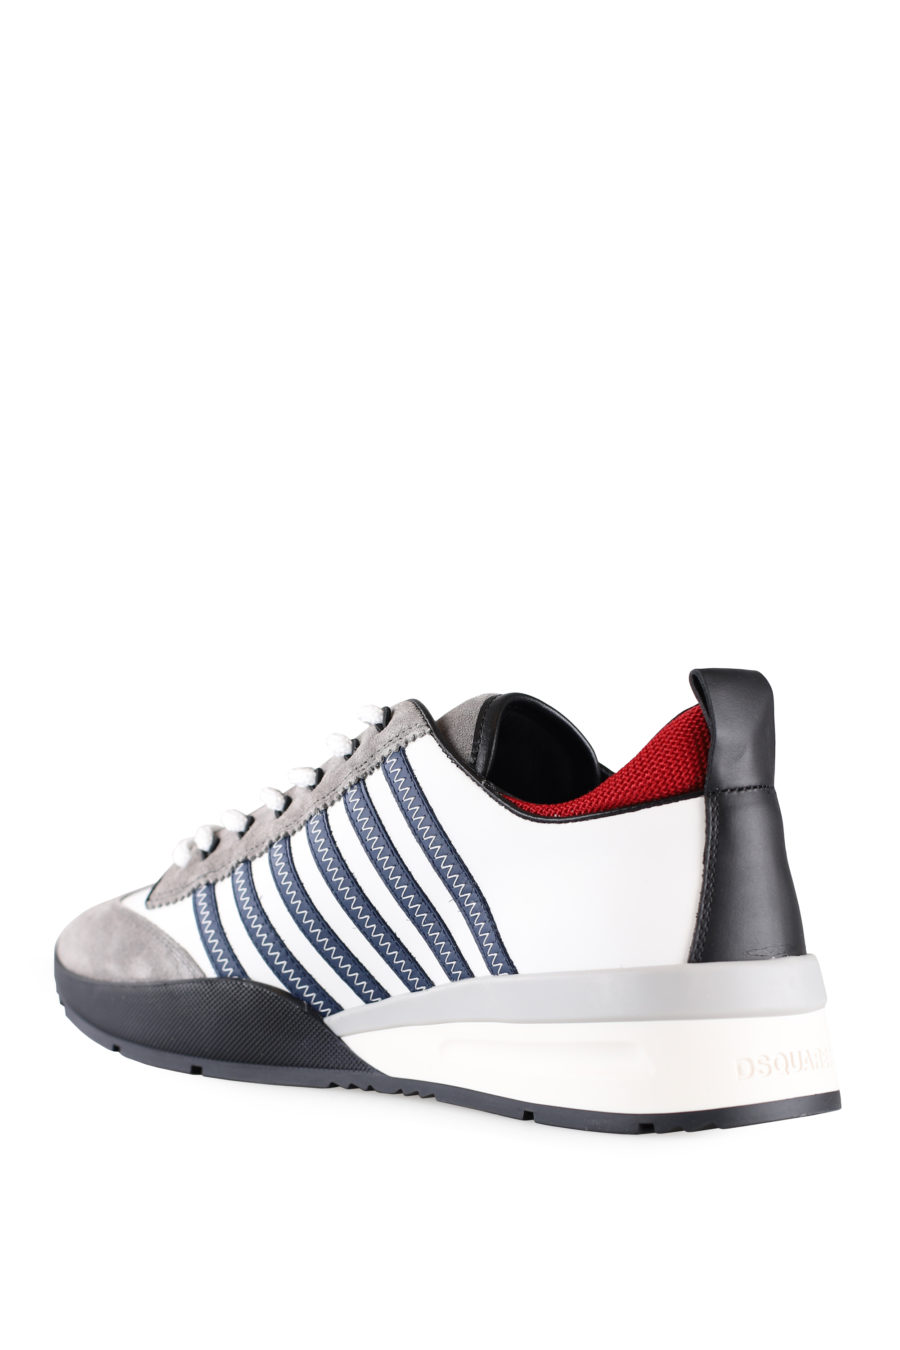 Zapatillas blancas y grises con líneas azules y detalle en rojo - IMG 0011